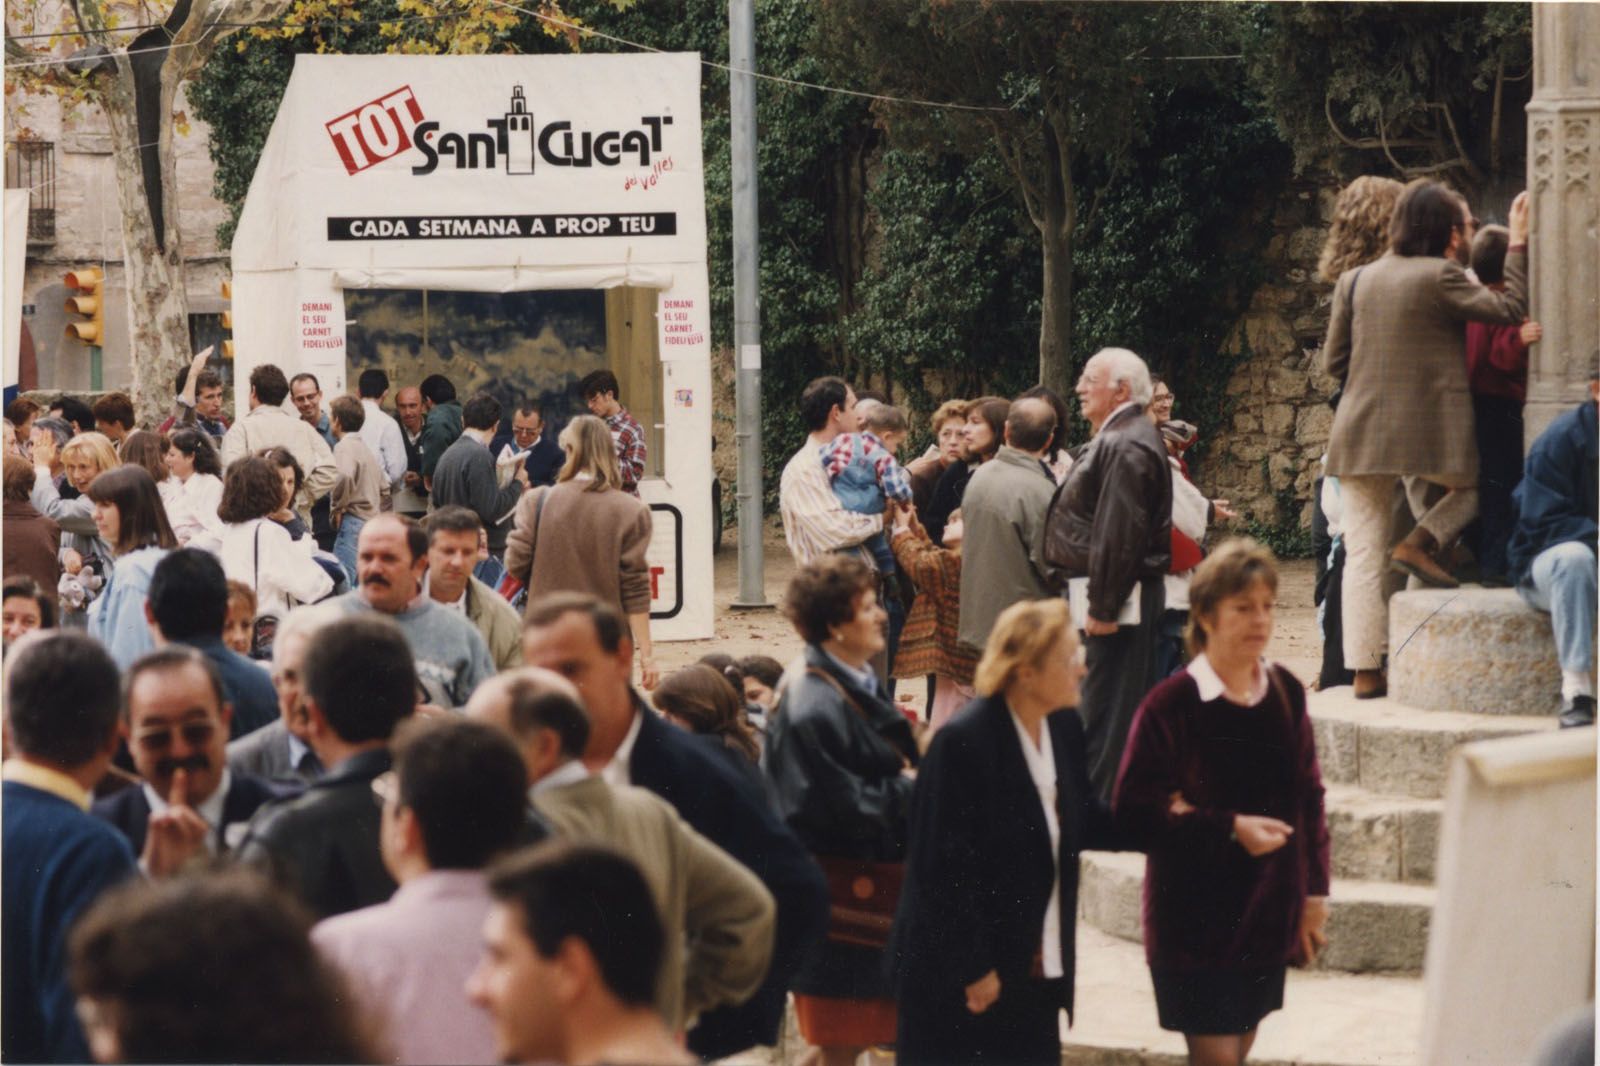 El TOT Sant Cugat a la Festa de Tardor, 1995. FOTO: Mané Espinosa